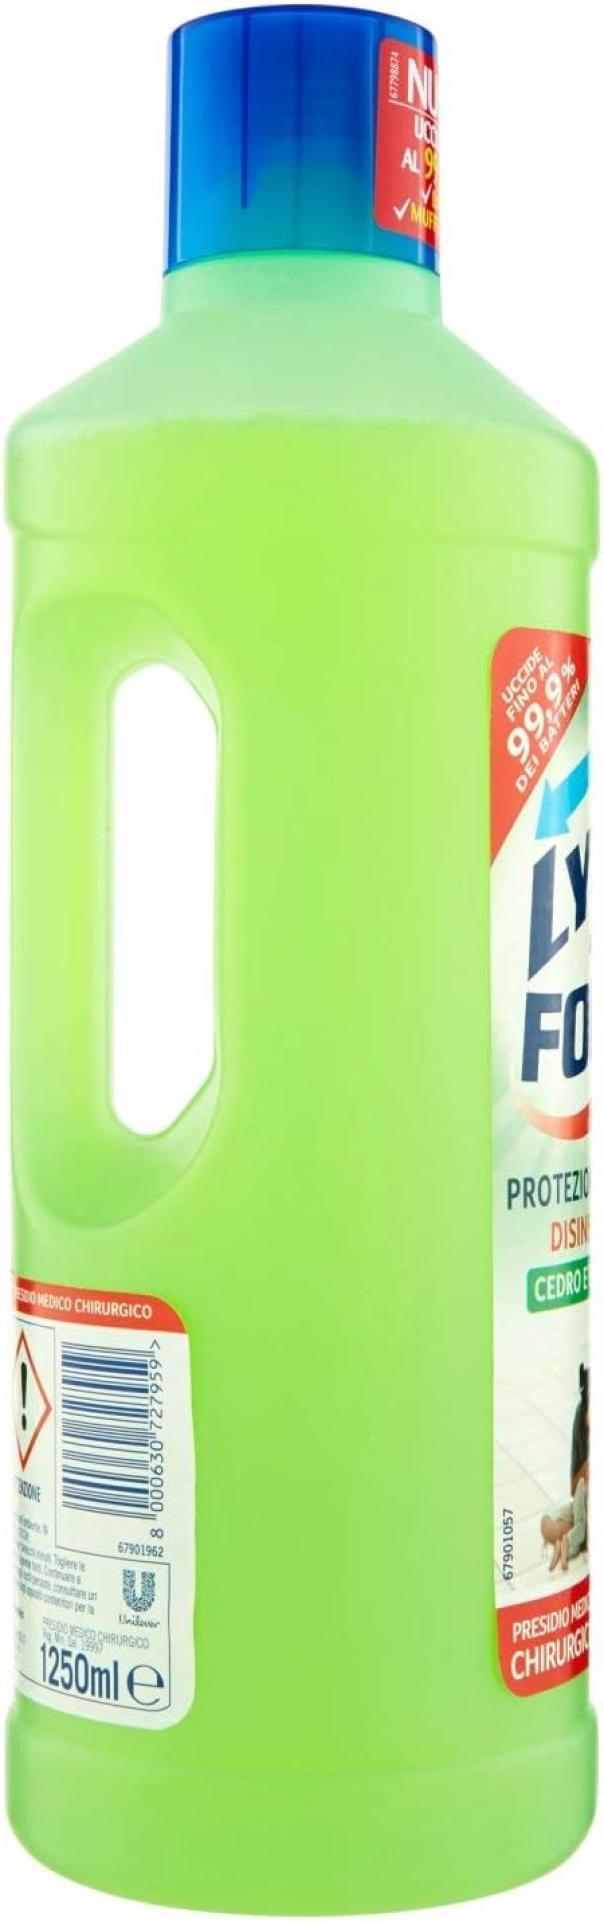 detergente-disinfettante-per-pavimenti-cedro-e-bergamotto-lysoform-1-lt-2